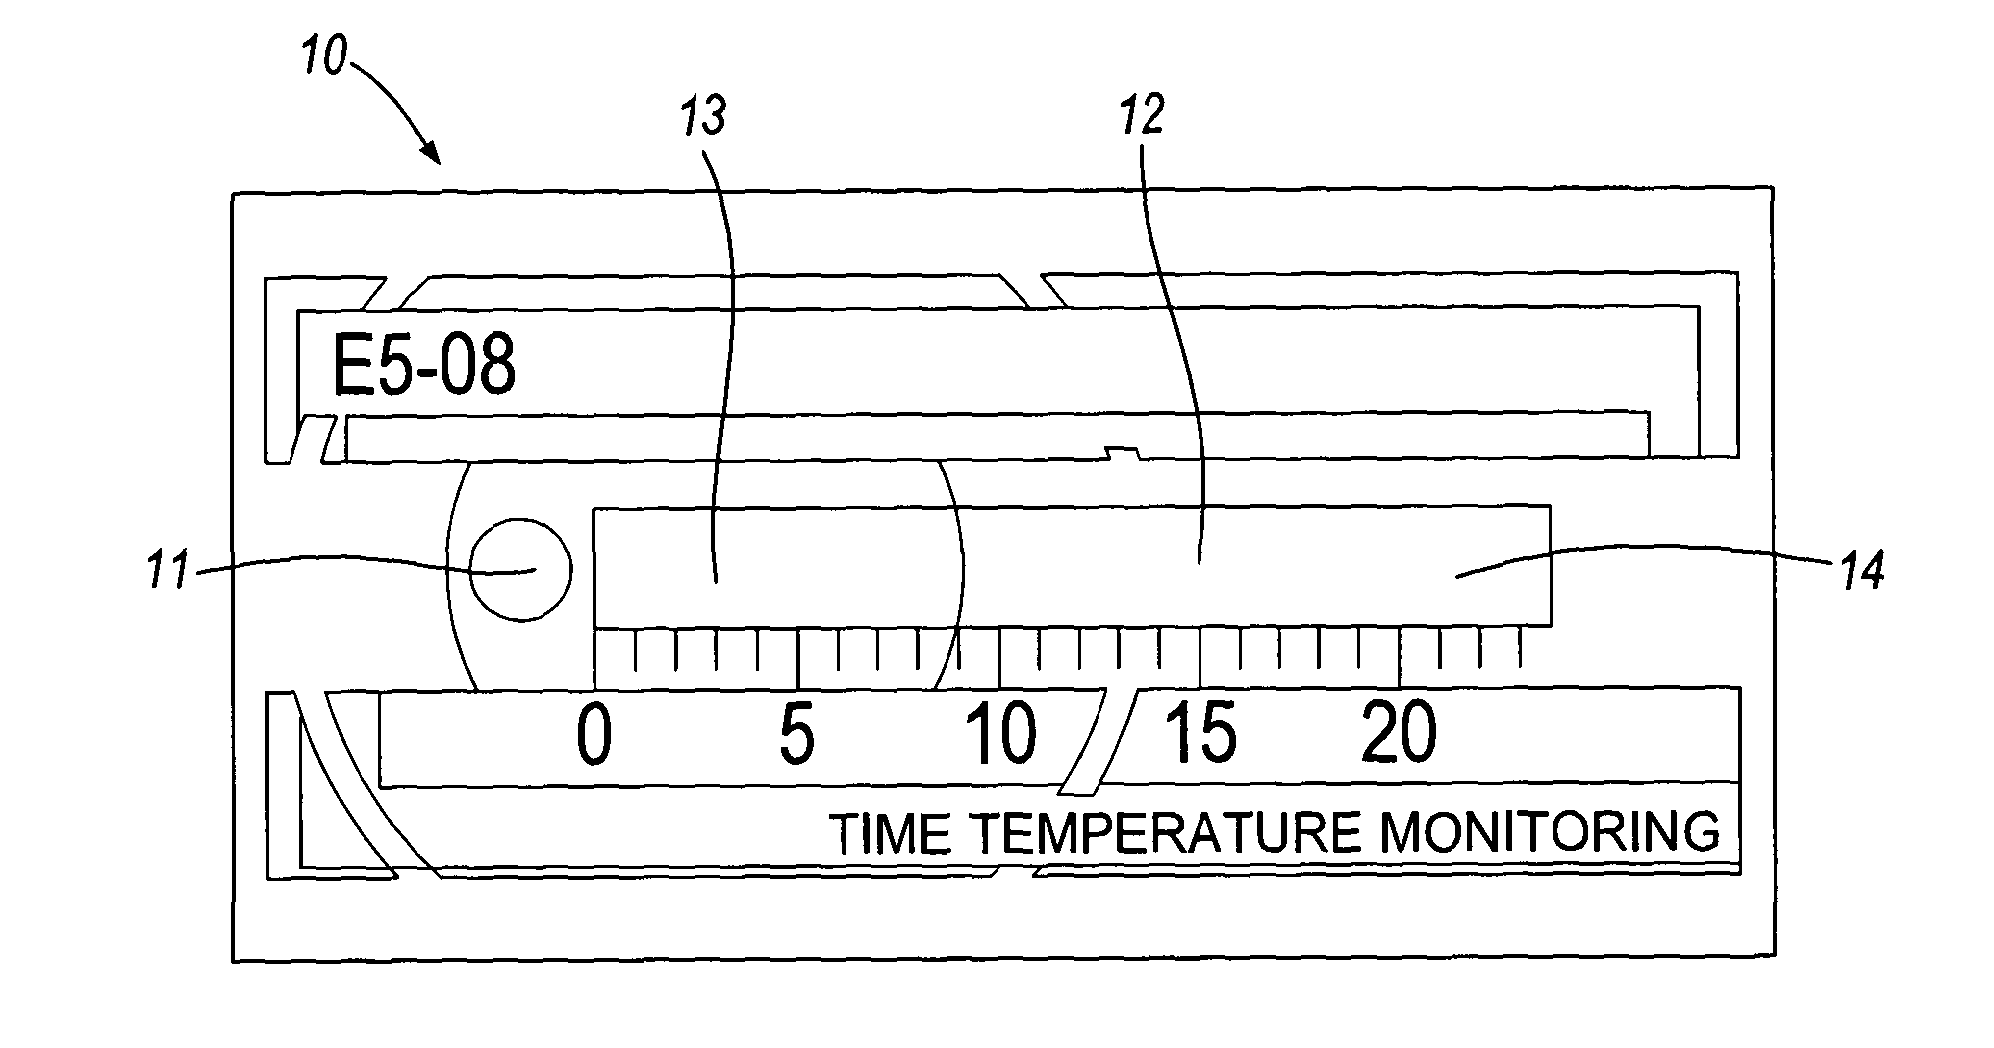 Time Temperature Monitor